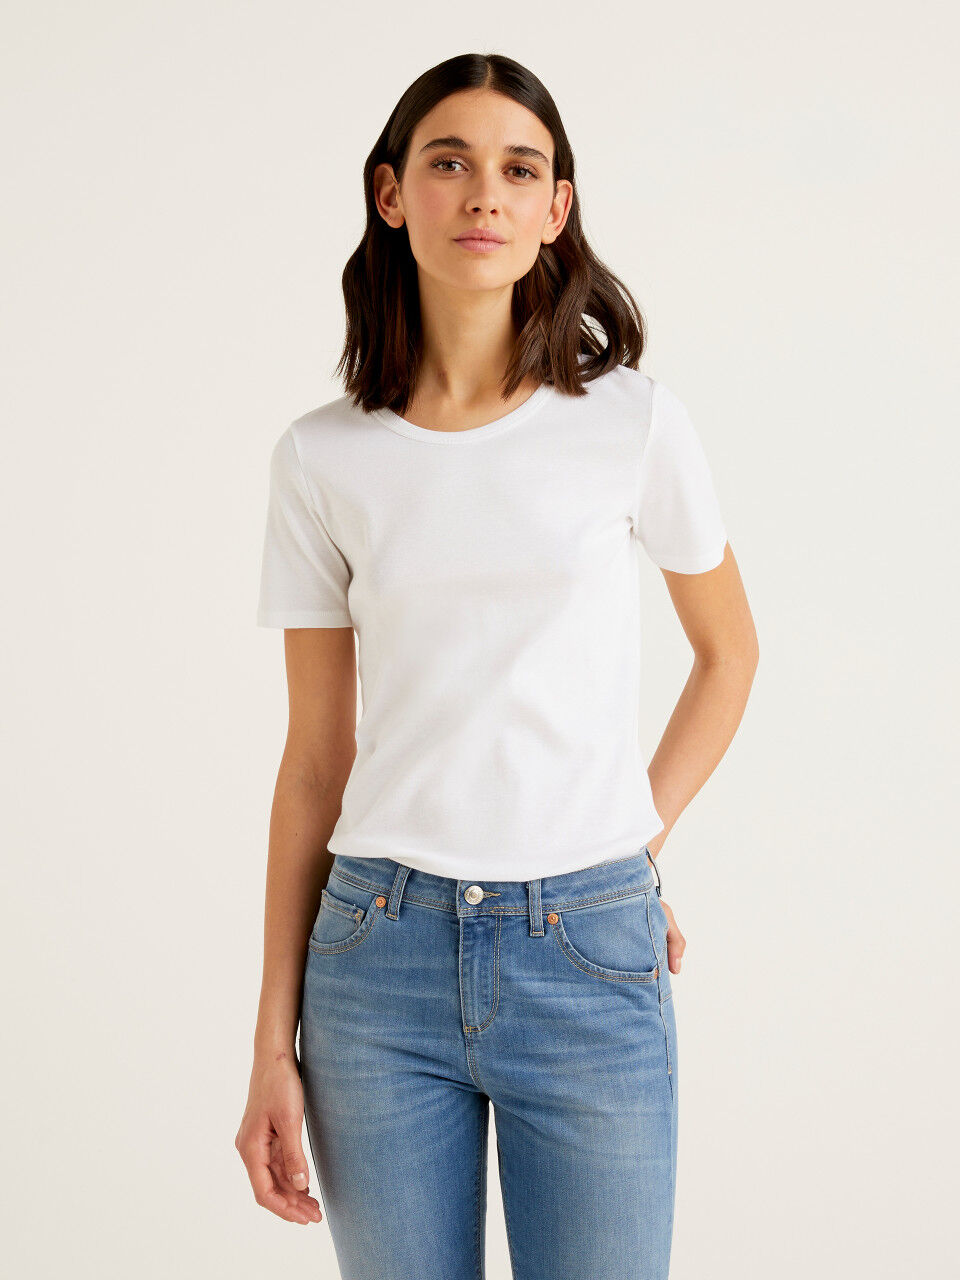 United colors of benetton T-Shirt DAMEN Hemden & T-Shirts T-Shirt Pailletten Rabatt 100 % Weiß M 